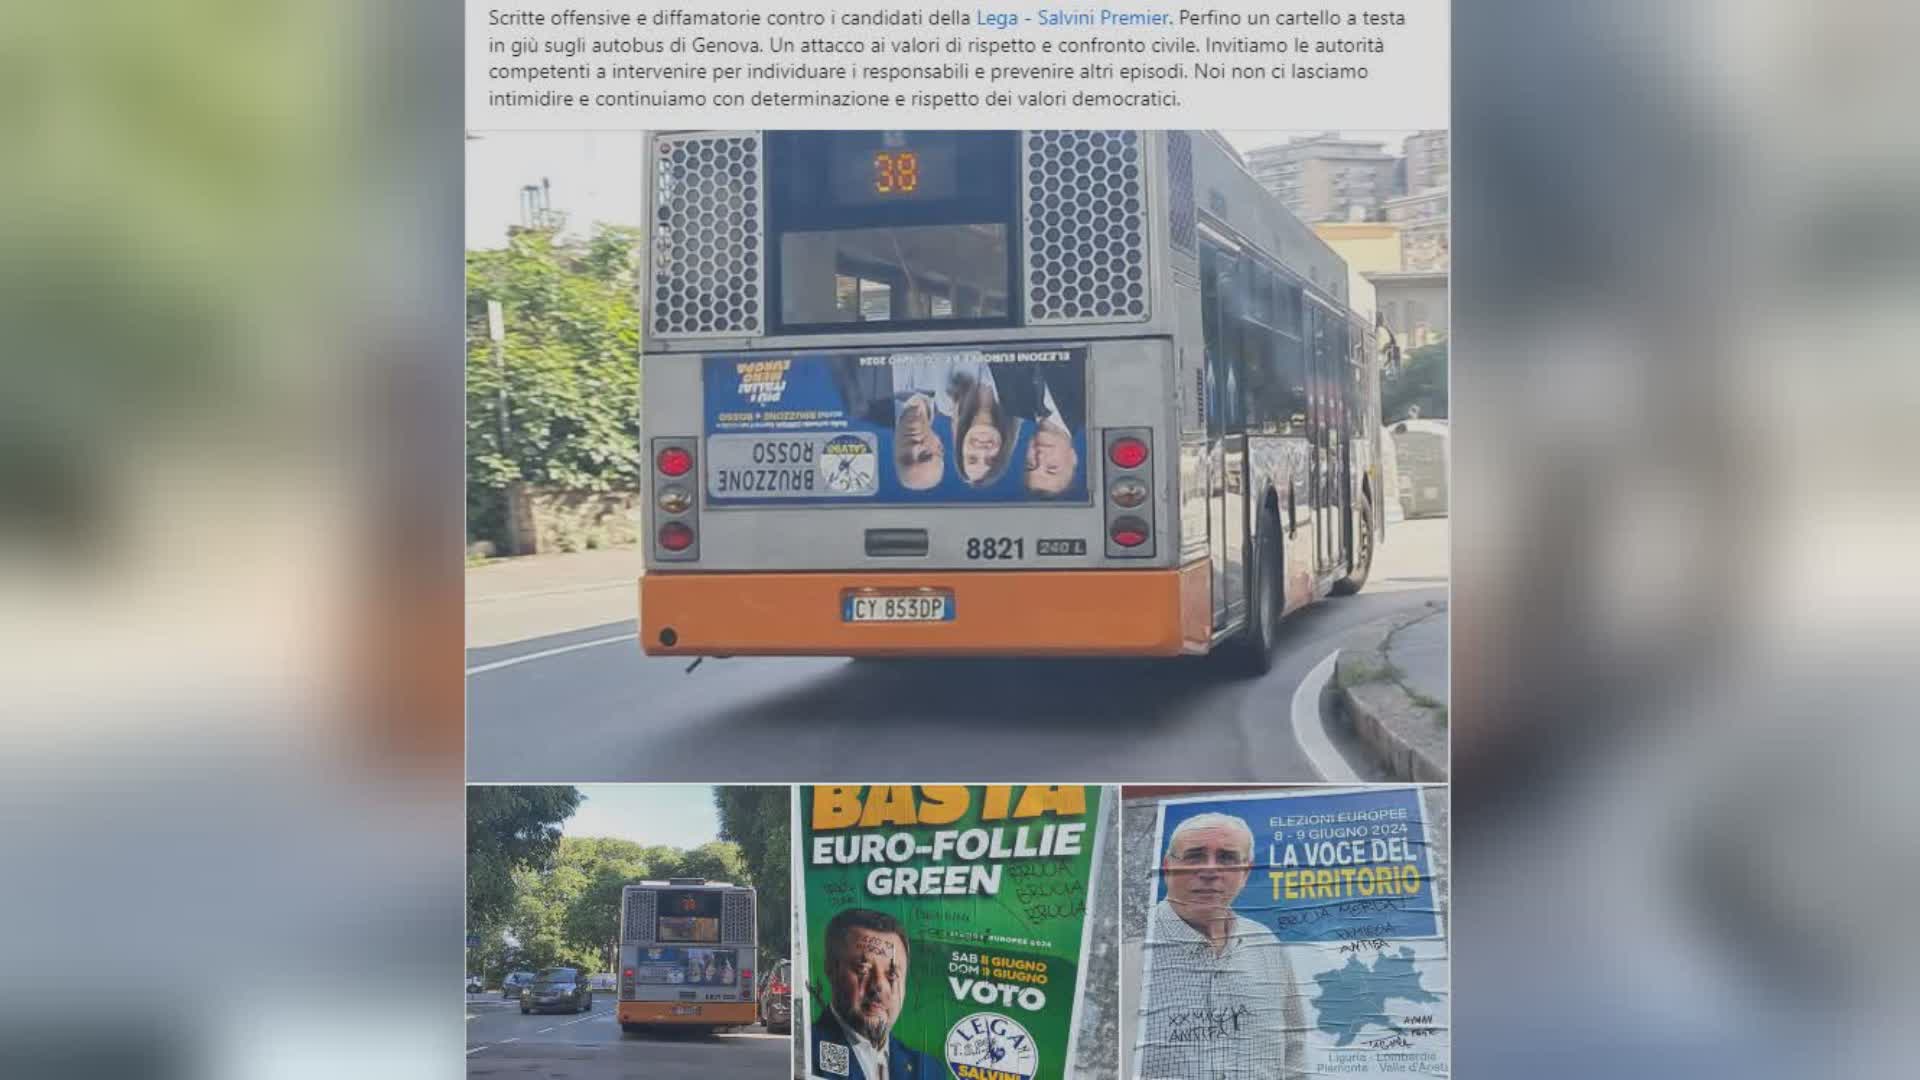 Genova, manifesto dei candidati Lega a testa in giu' su autobus. Il viceministro Rixi: "Attacco ai valori di rispetto e confronto civile"